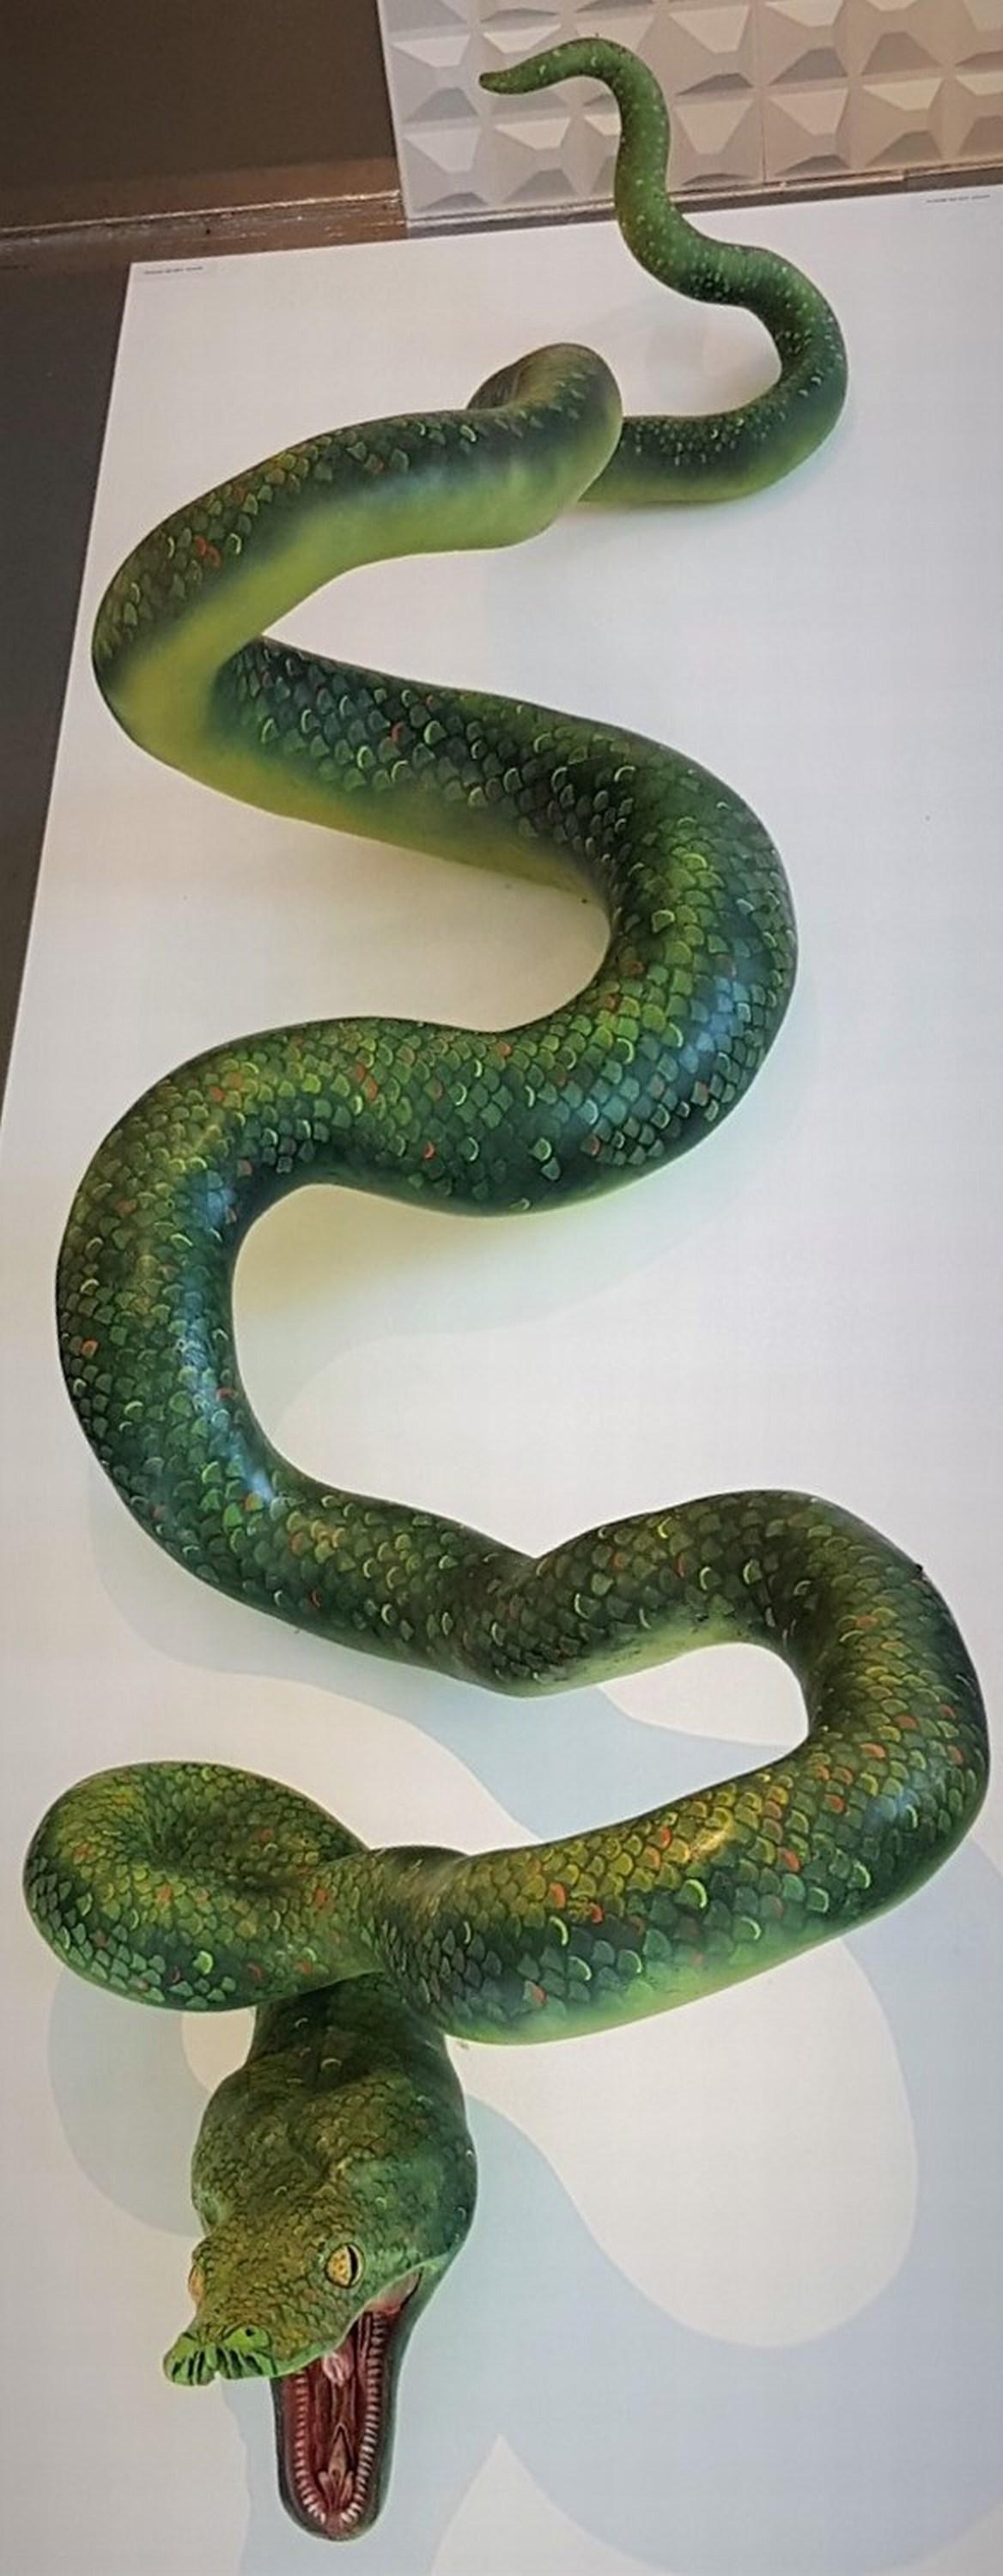 Serpent - Sculpture by Ross Redmon